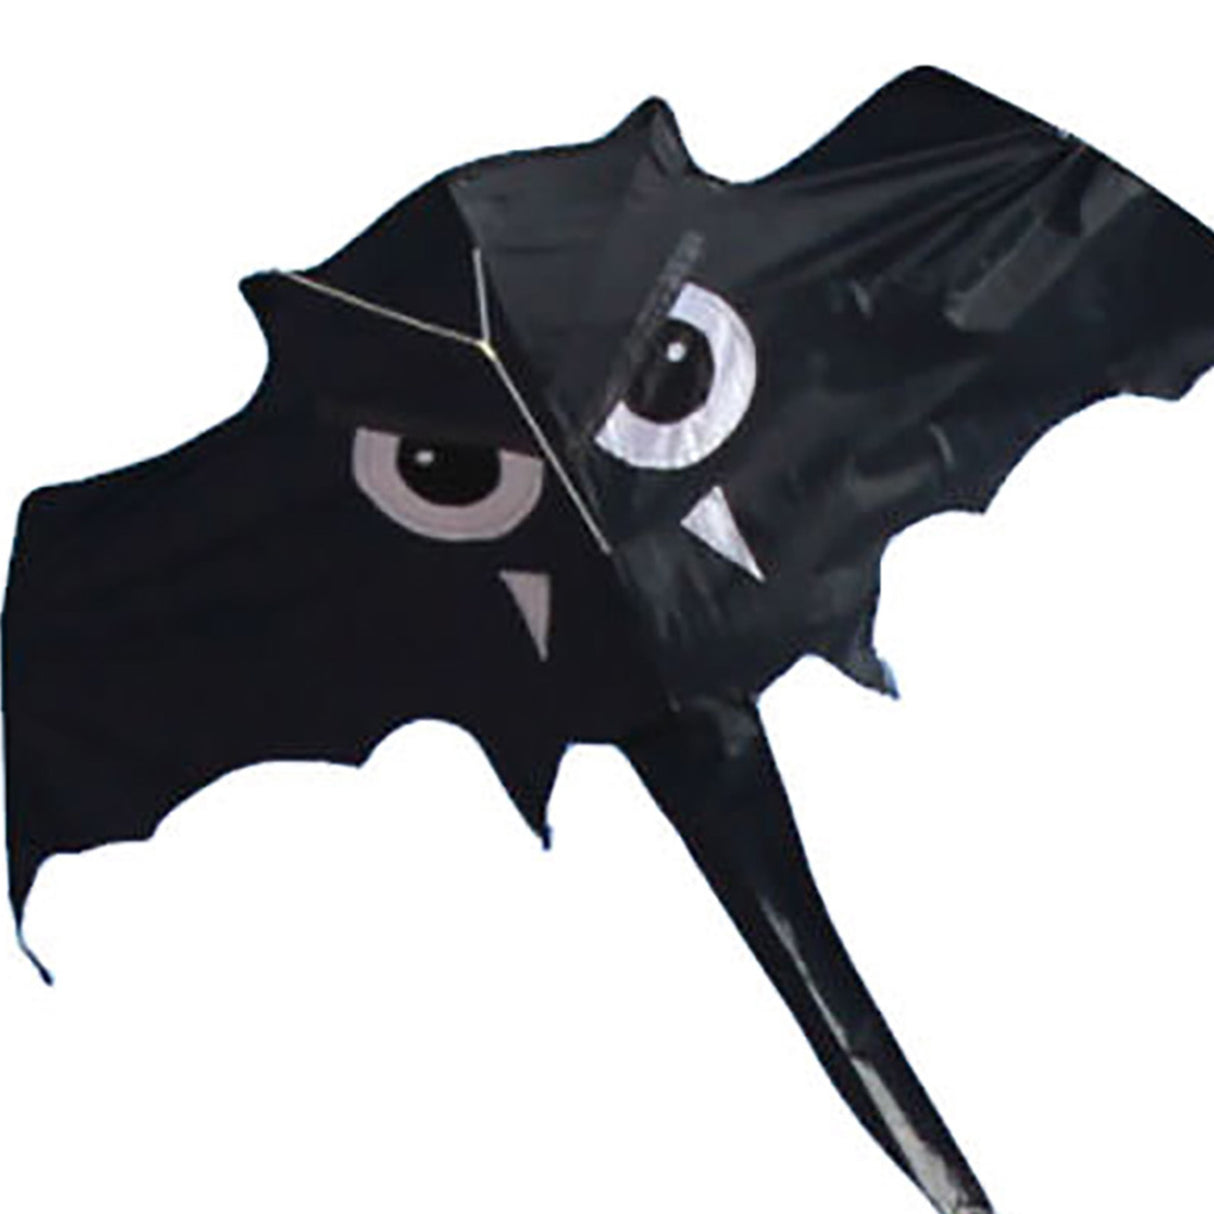 Black Bat Kite